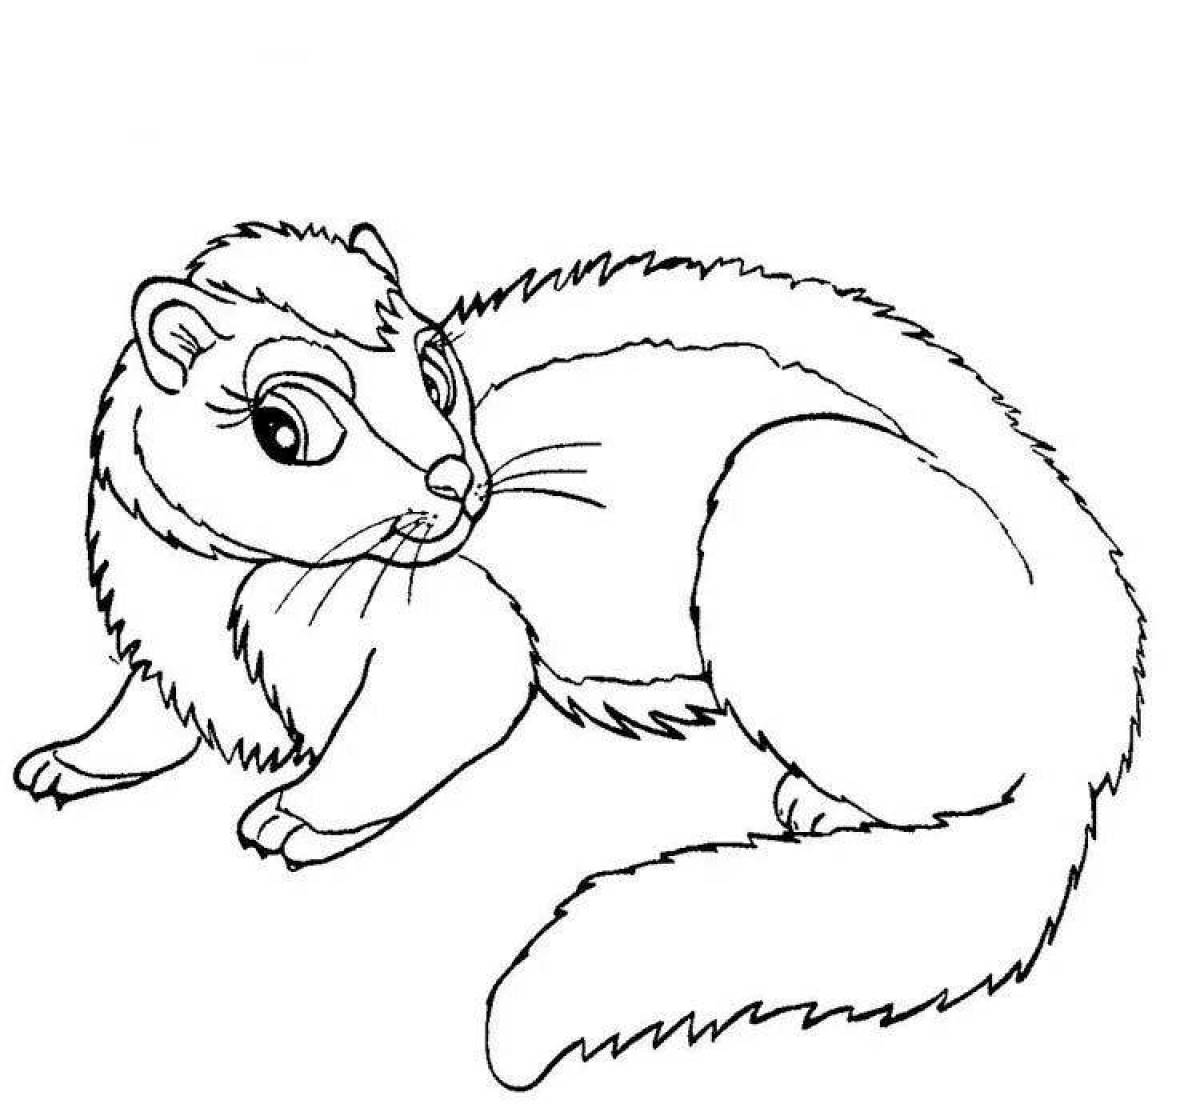 Fun coloring weasel